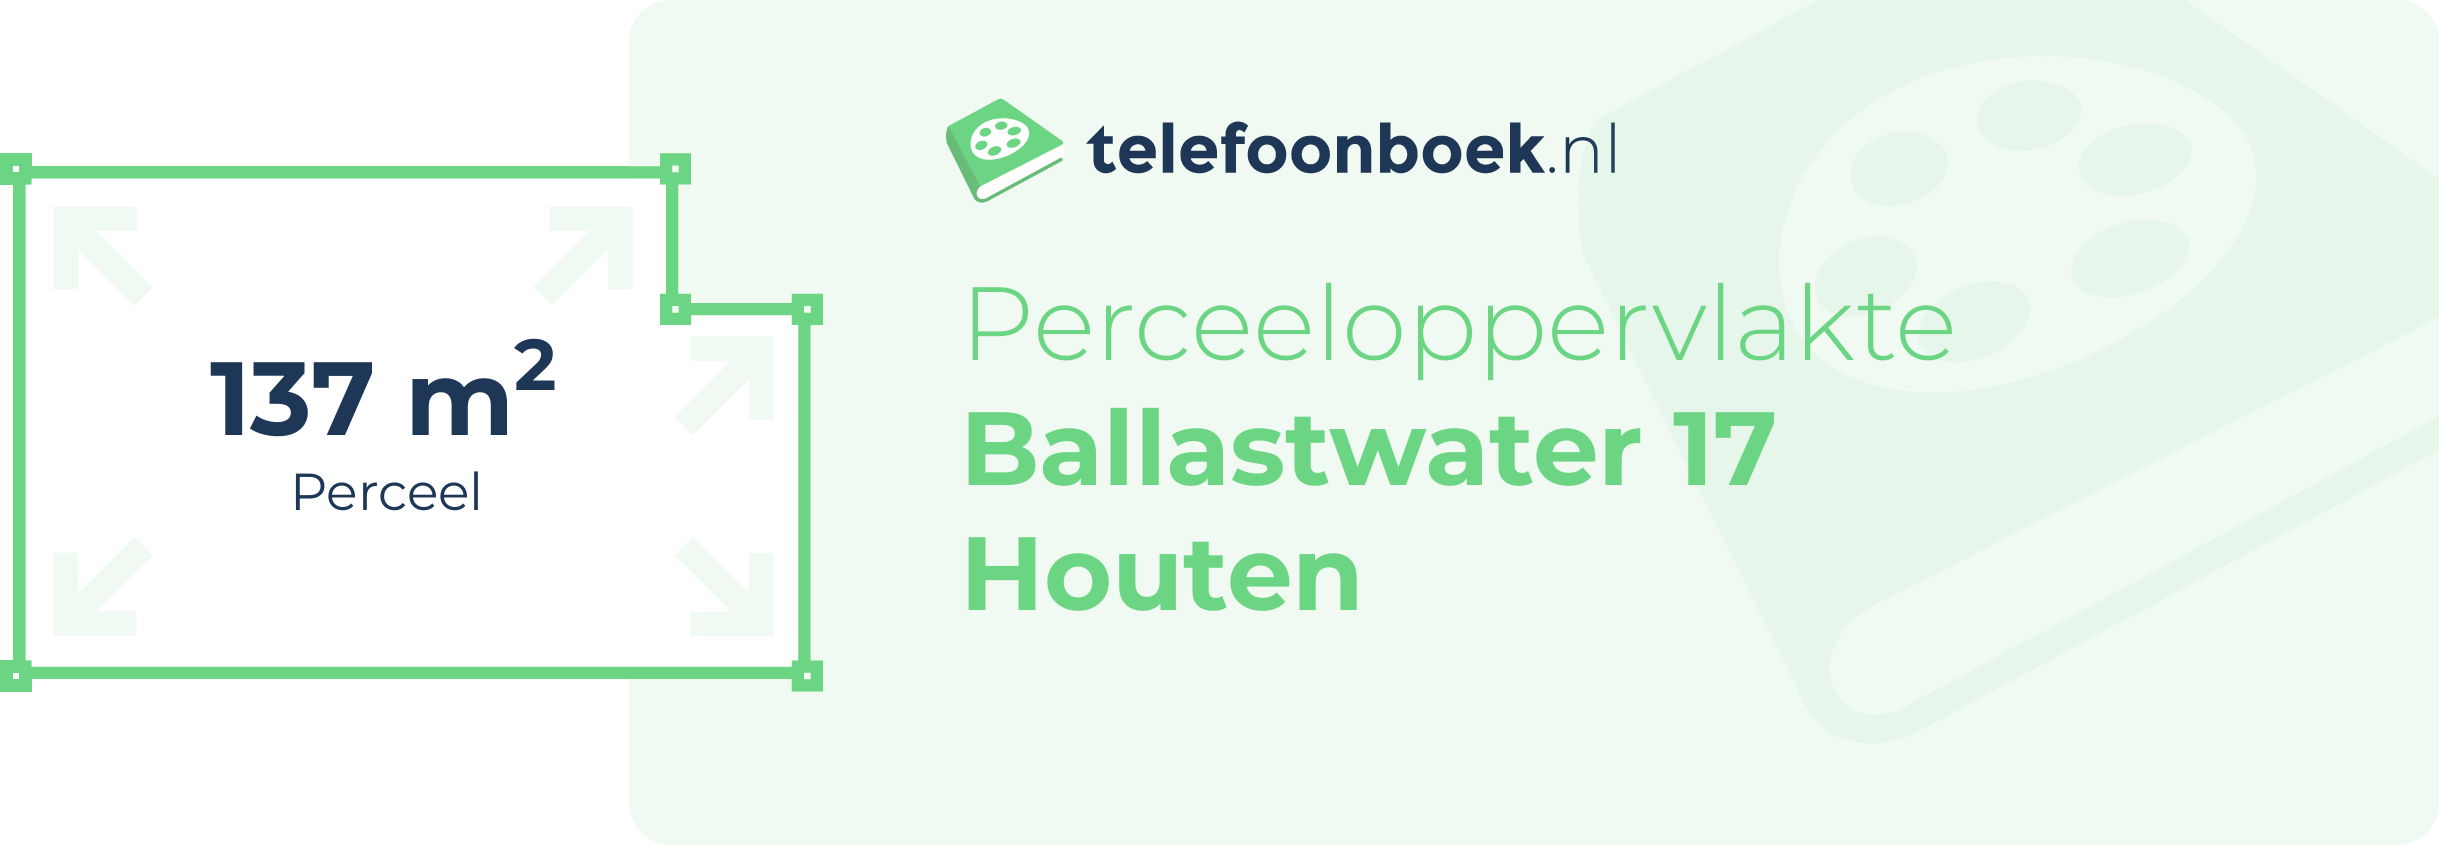 Perceeloppervlakte Ballastwater 17 Houten